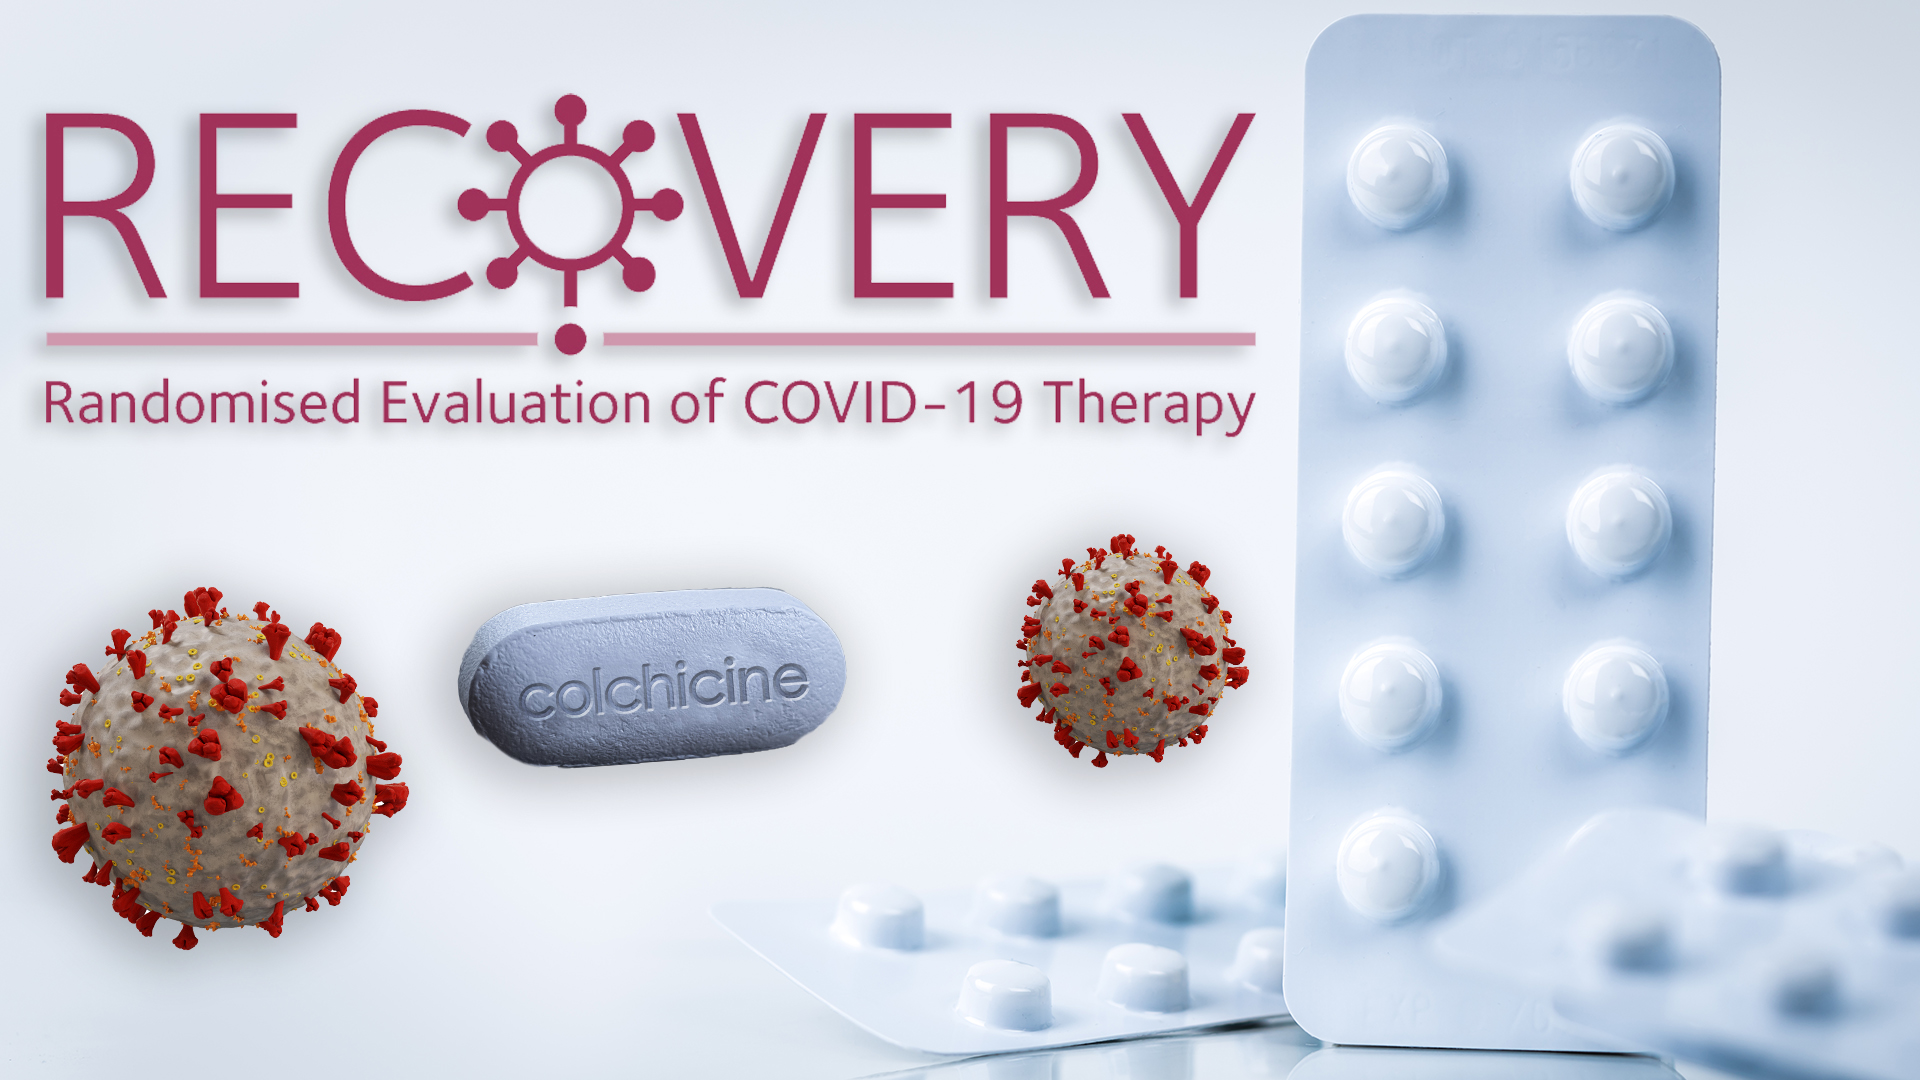 "Desde la Argentina se impulsa este ensayo con la droga llamada colchicina que podría contribuir a prevenir la desmejoría de los pacientes que han tenido complicaciones por la infección por el coronavirus”

